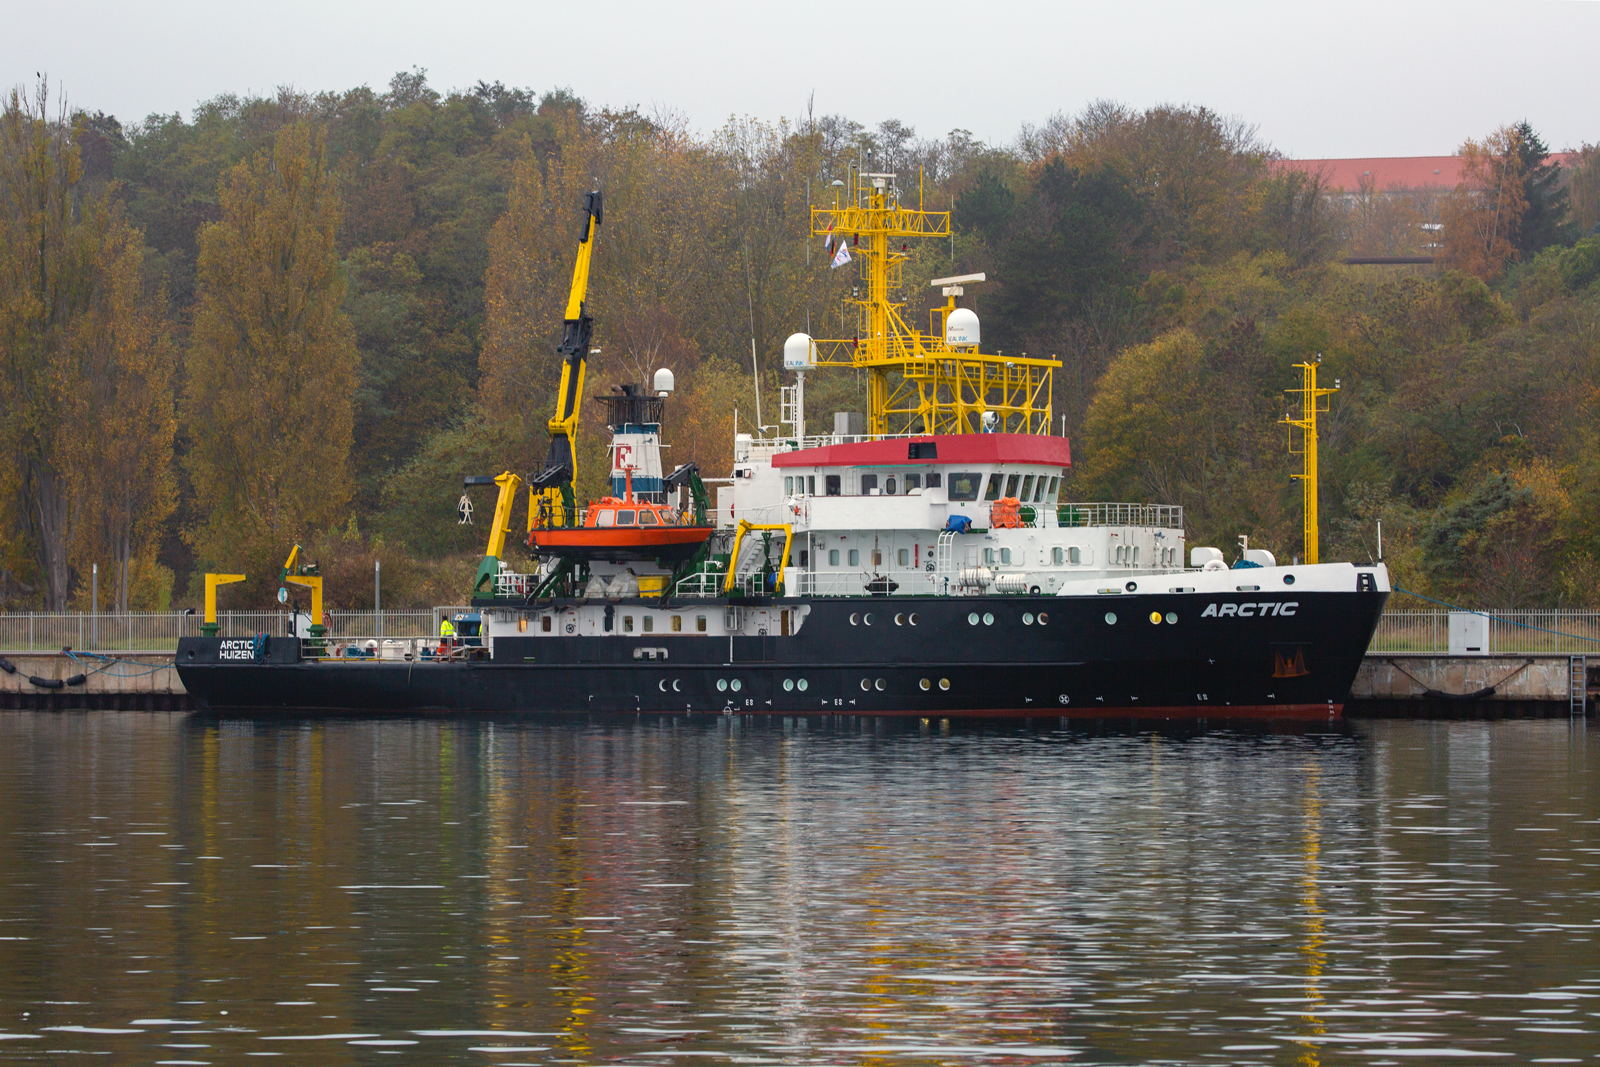 Forschungsschiff ARCTIC (IMO 8521426) bei diesigem Wetter im Sassnitzer Hafen. - 31.10.2022
